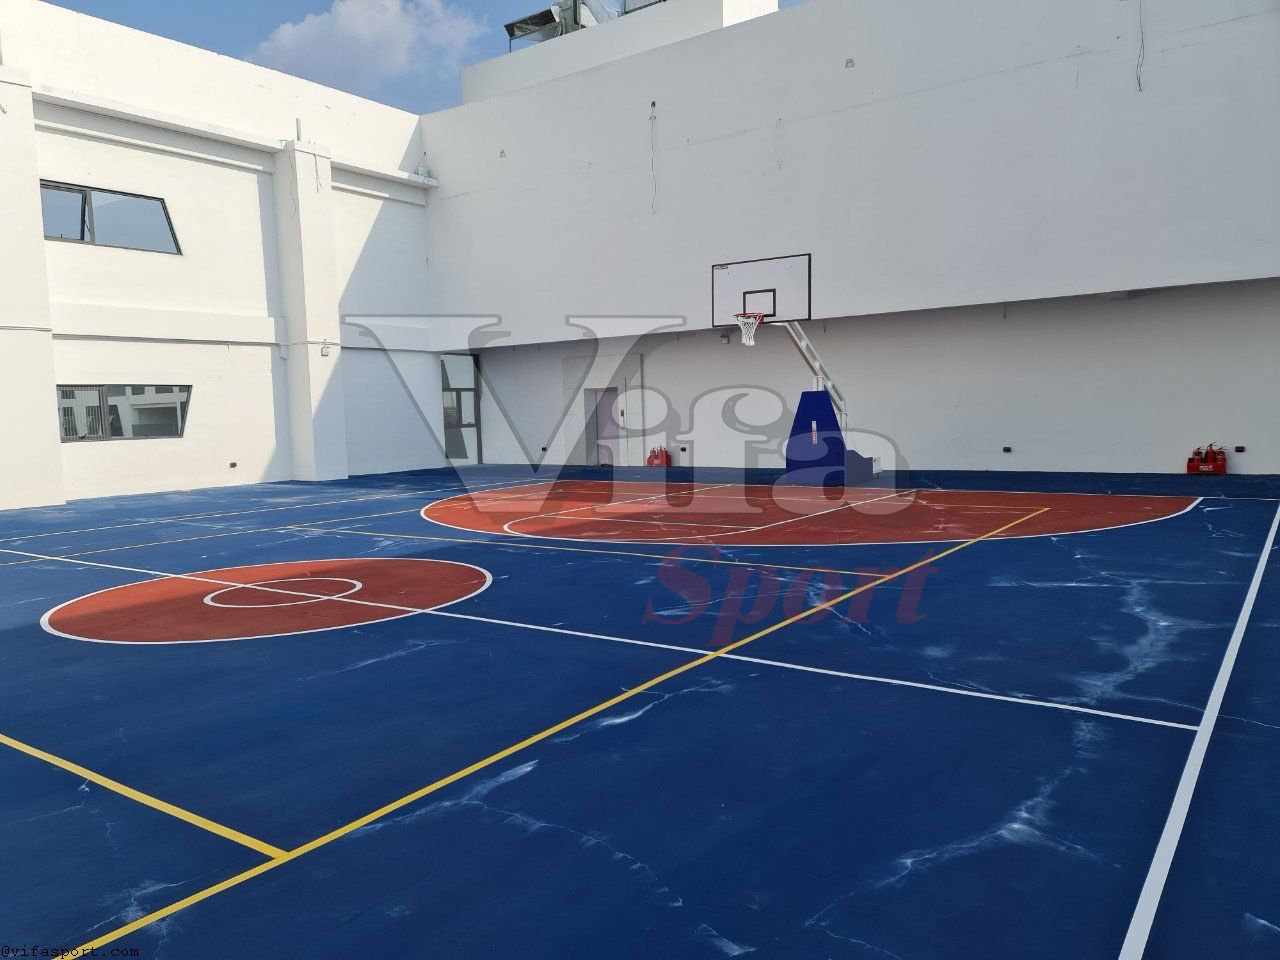 Chi nhánh VIFASPORT tại Hà Nội hoàn thành cung cấp trụ bóng rổ cho trường quốc tế.